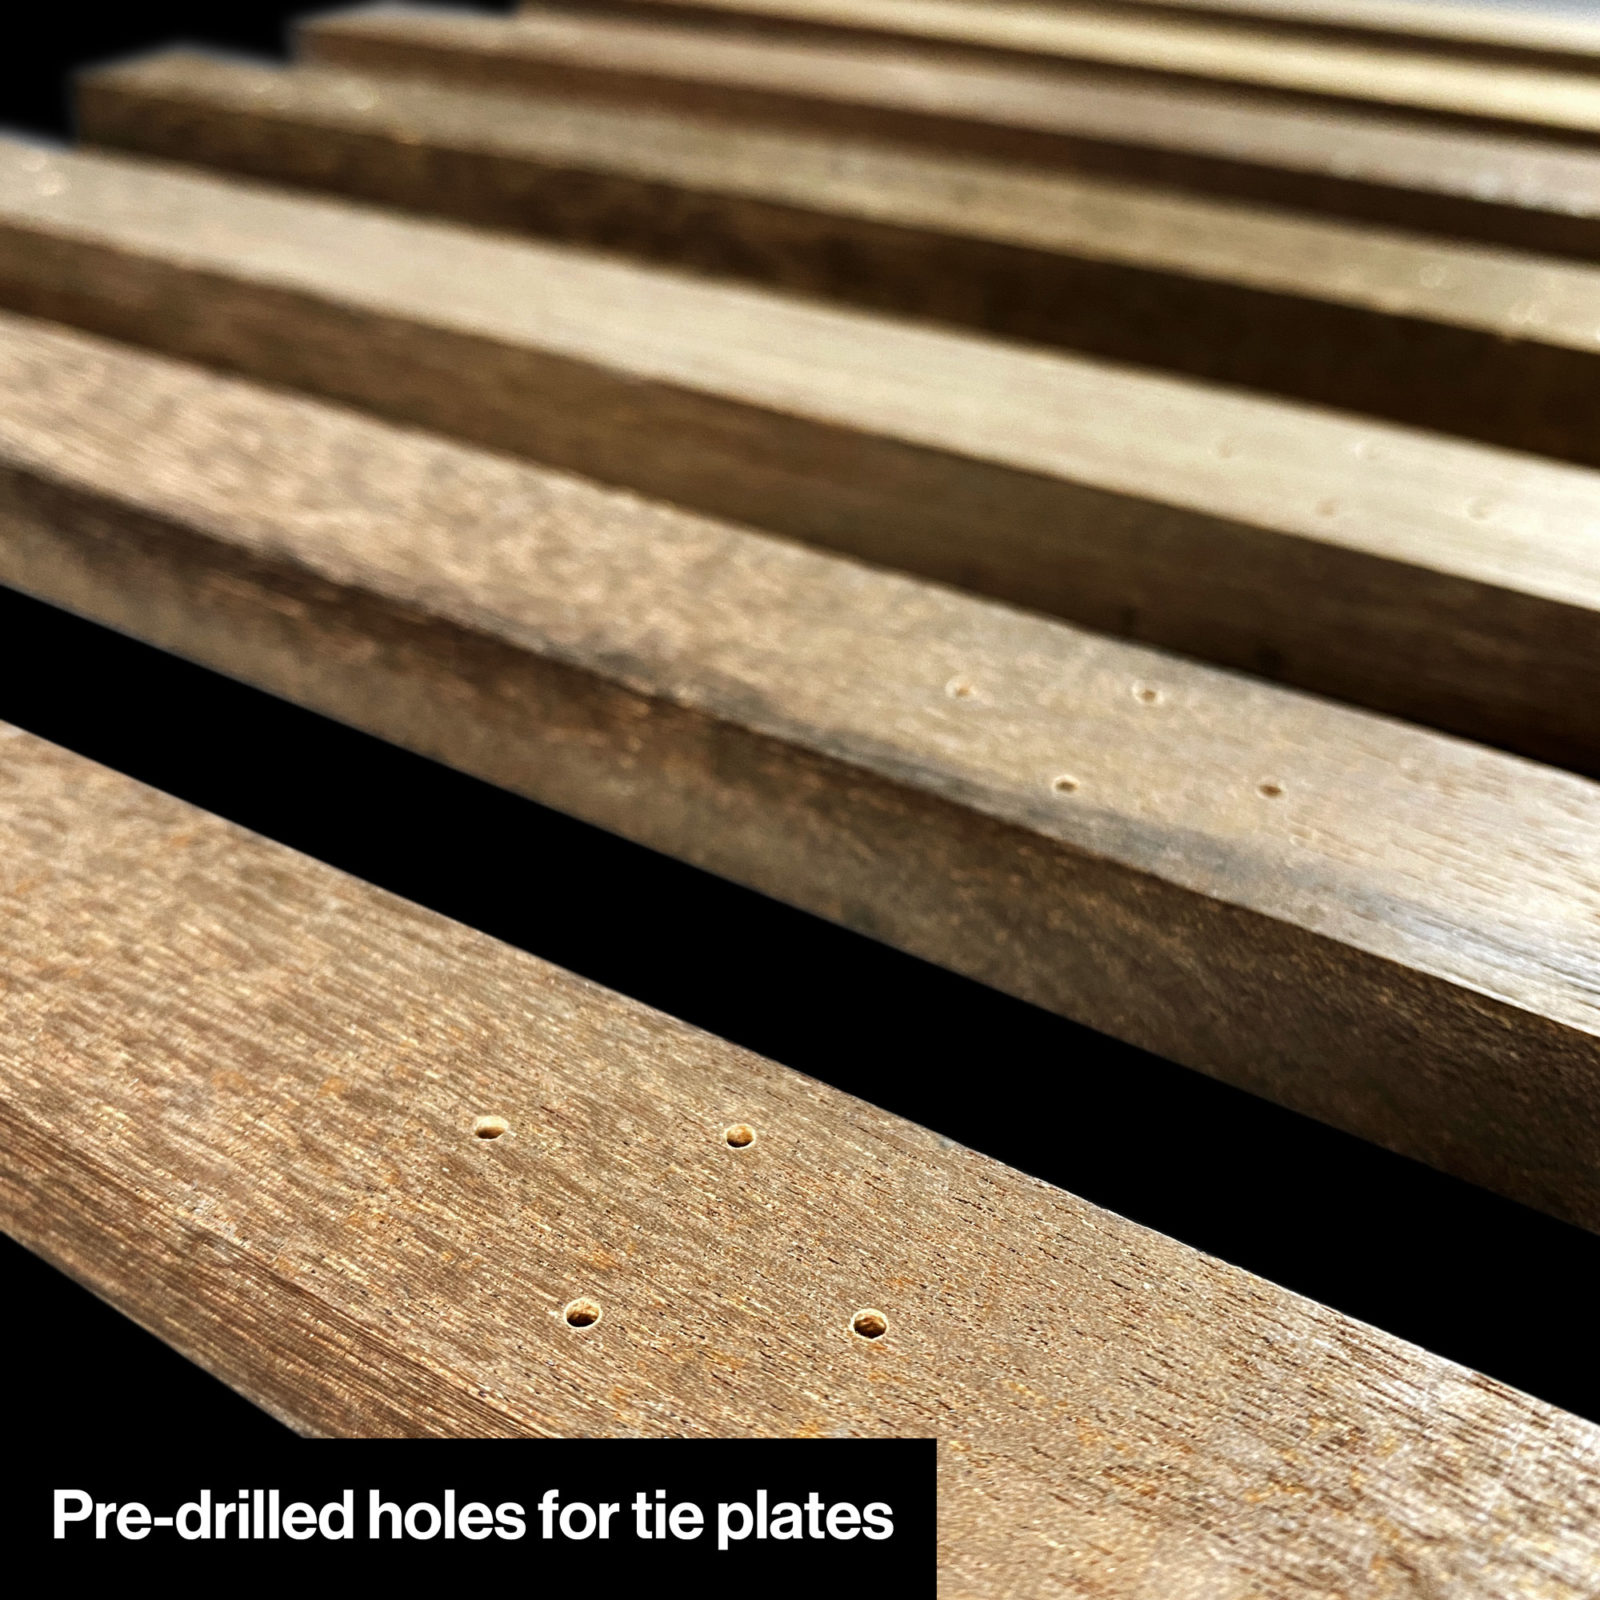 Pre-drilled holes on DeLorean Railroad tie plates